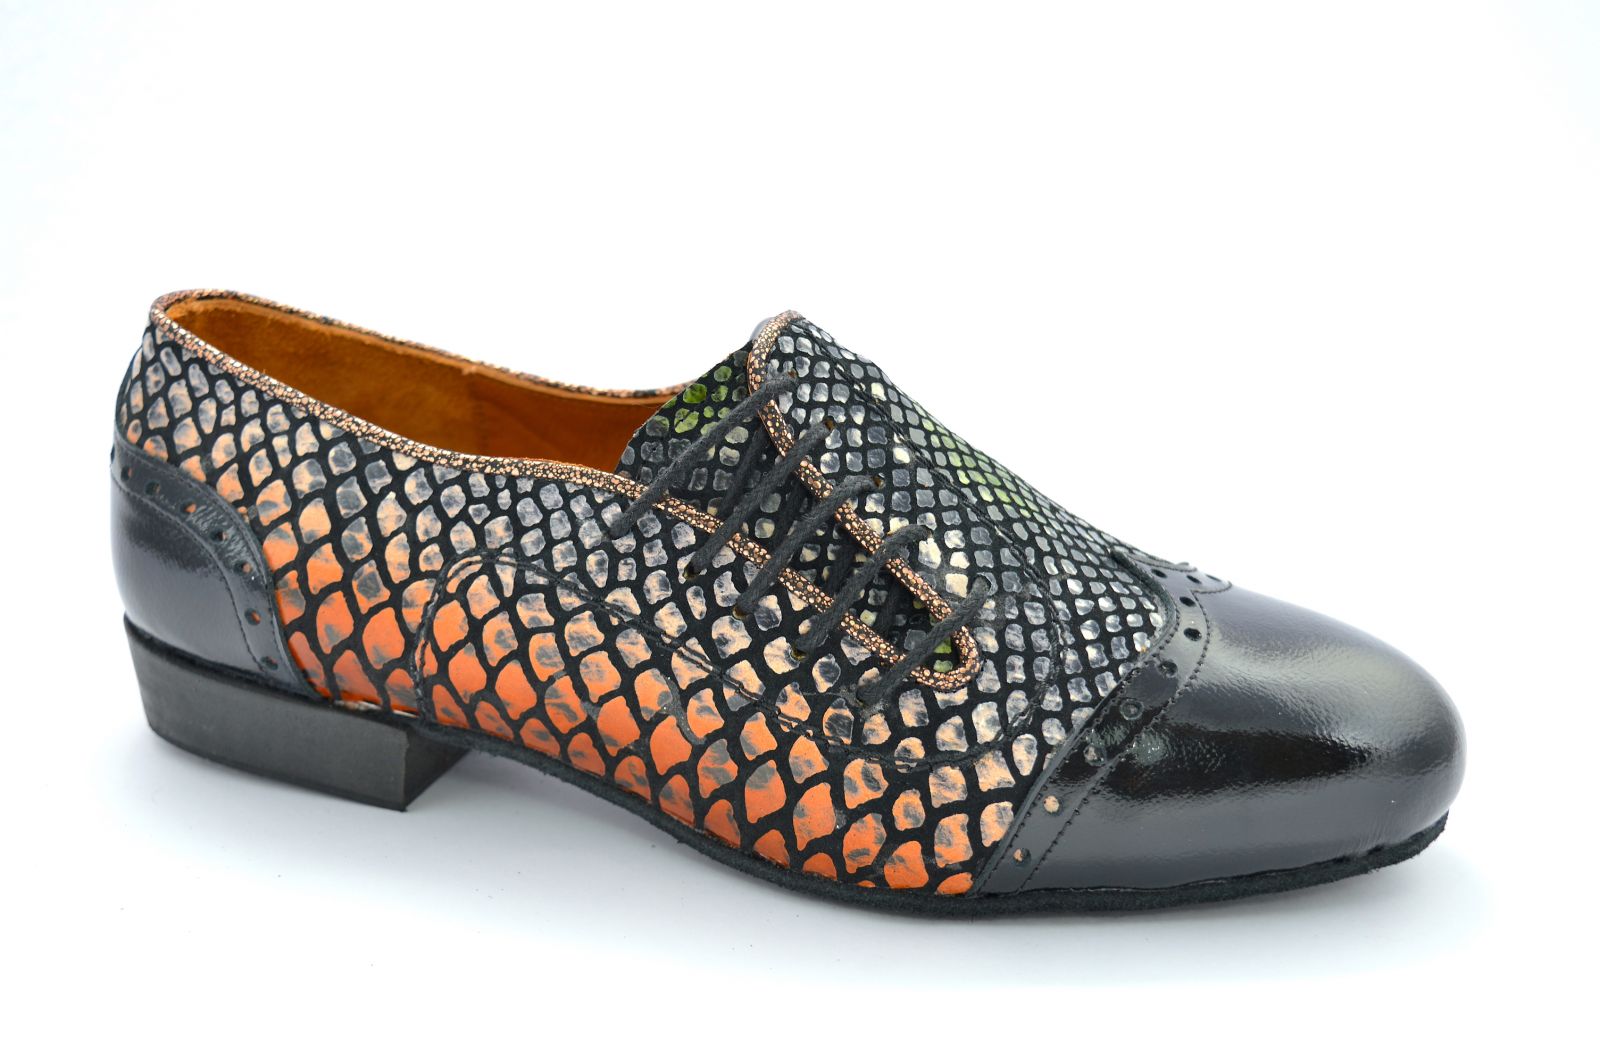 Ανδρικό παπούτσι χορού αργεντίνικου τάνγκο από πολύχρωμο δέρμα φίδι και μαύρο λουστρίνι